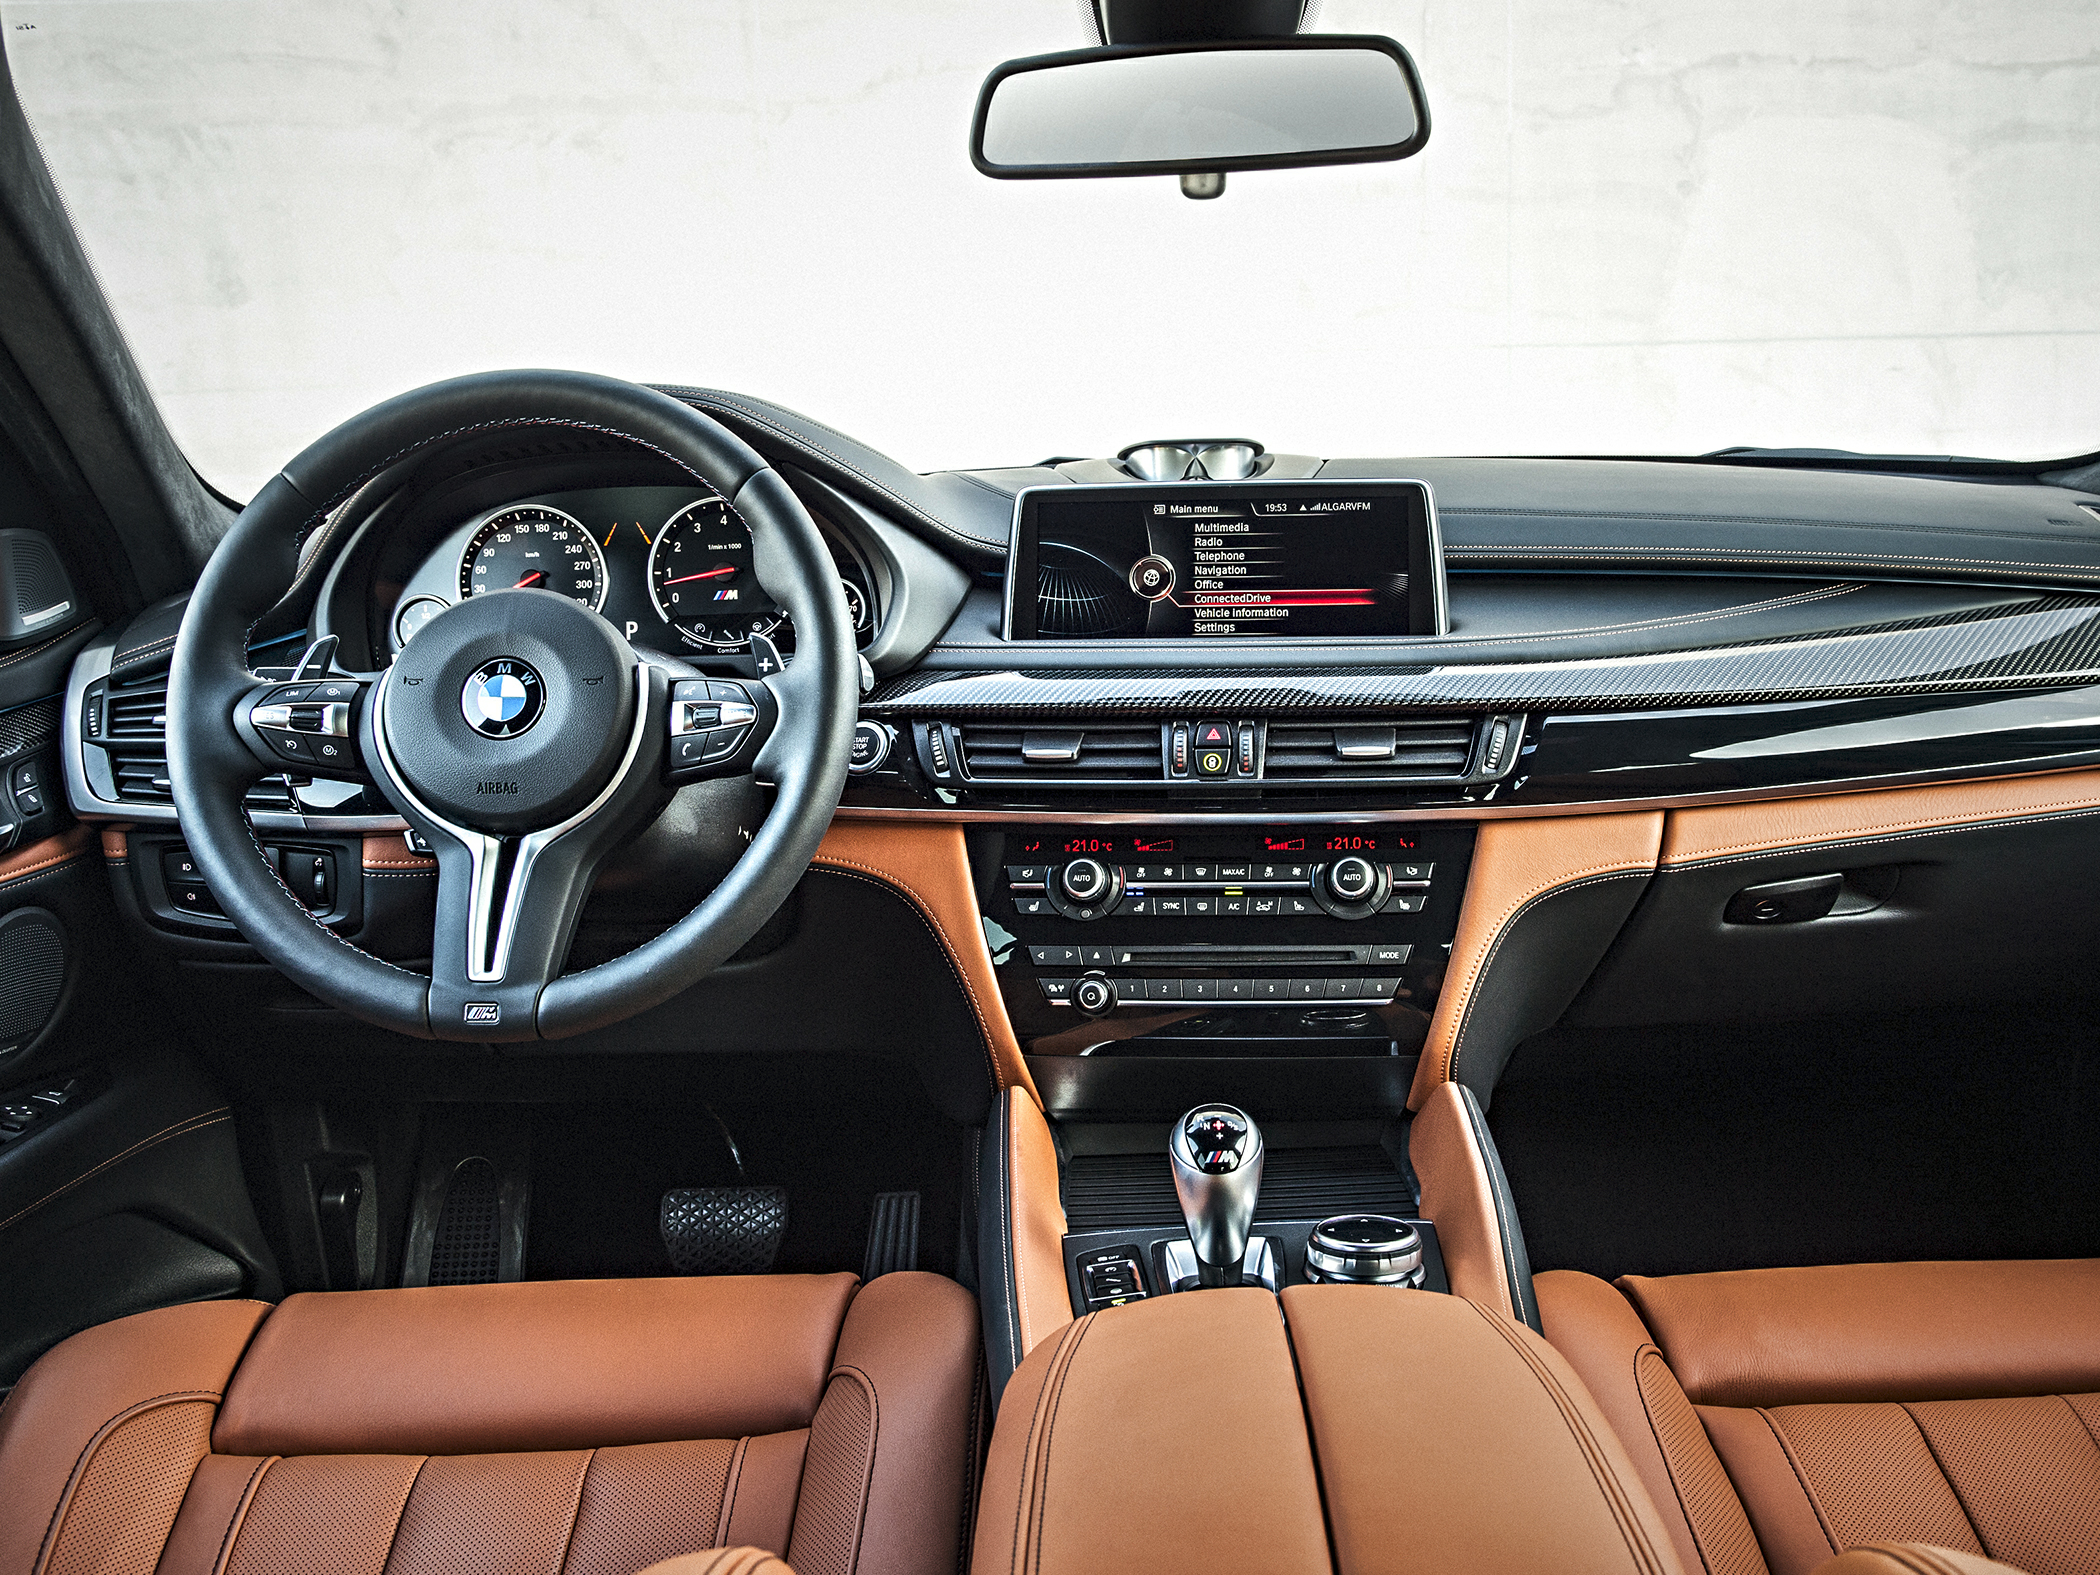 2016 BMW X6 M